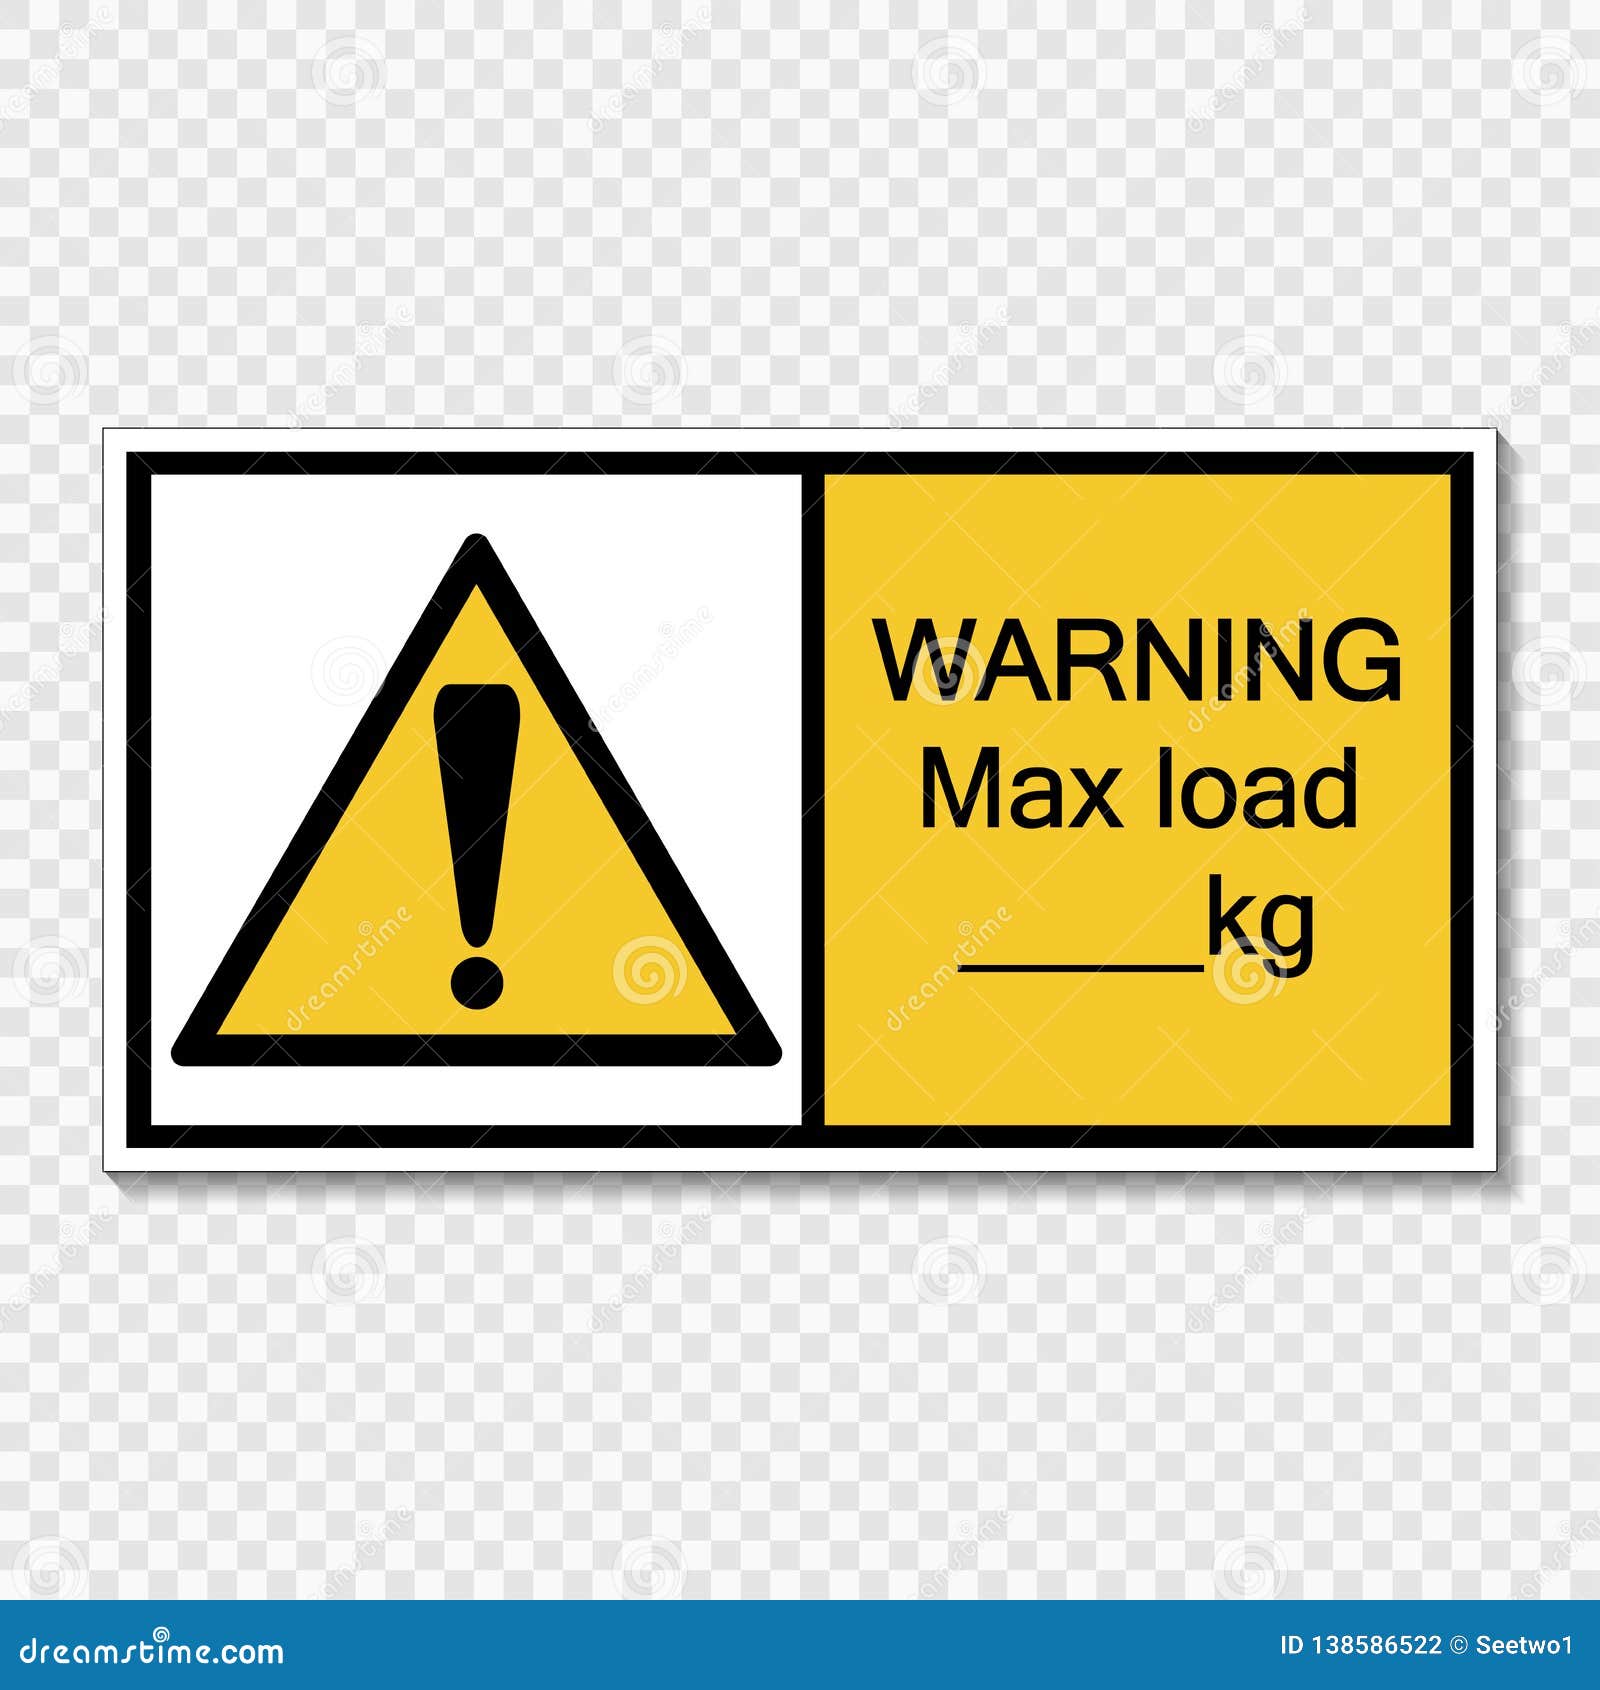 Symbol Warning Max Load Kg.sign Label On Transparent ...